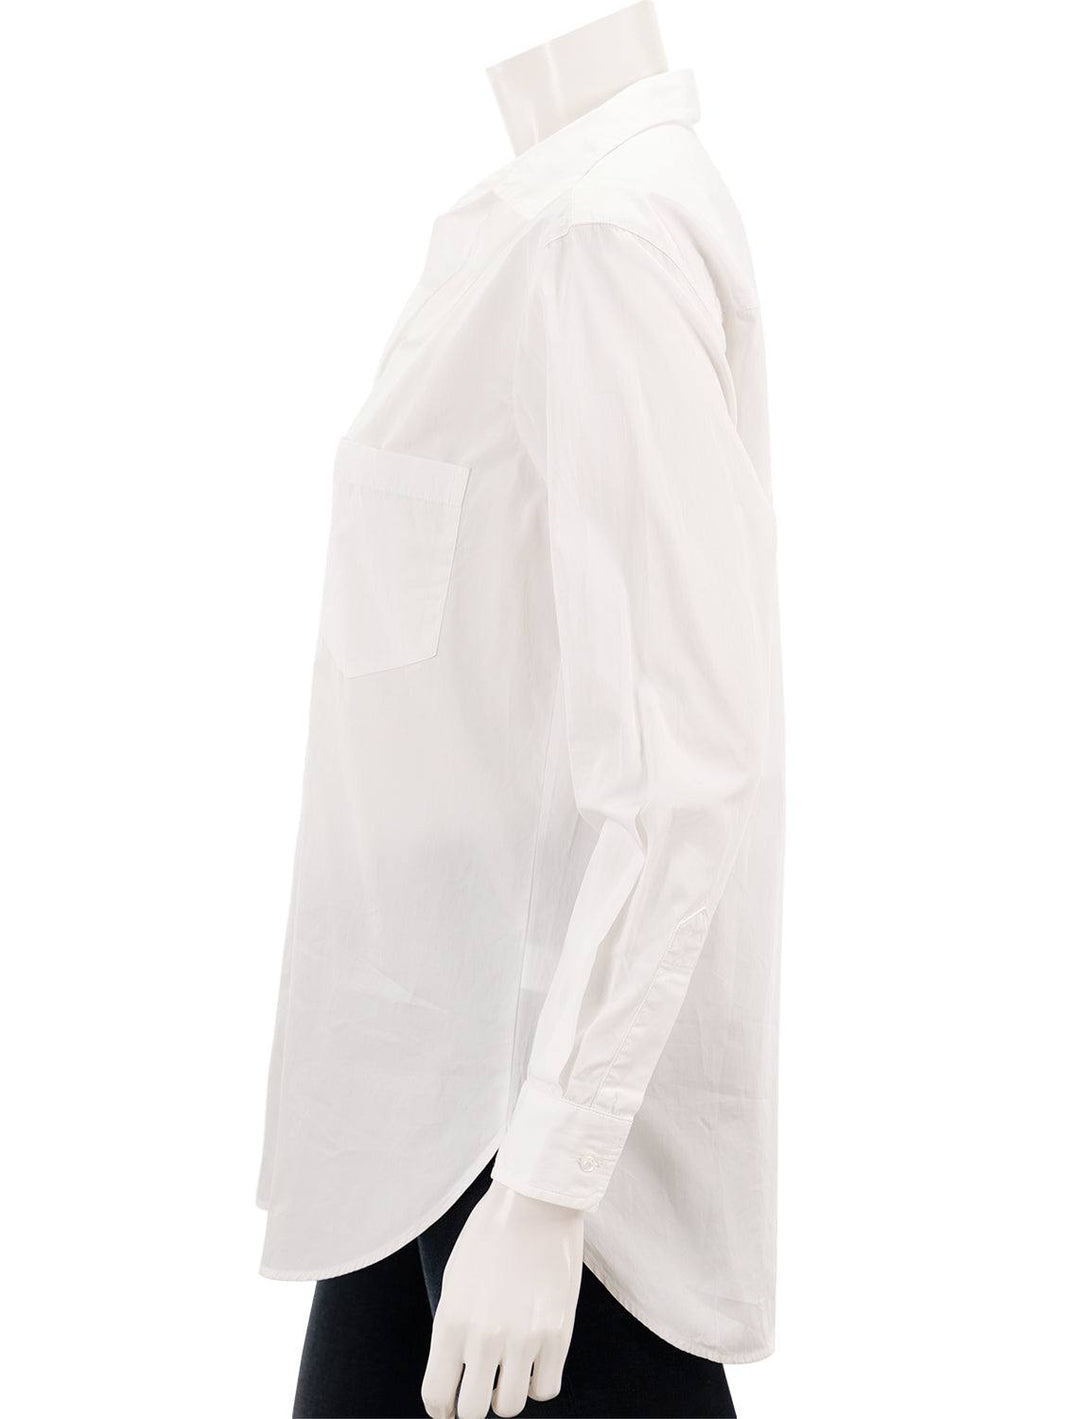 Side view of Frank & Eileen's joedy shirt in white superluxe italian cotton.